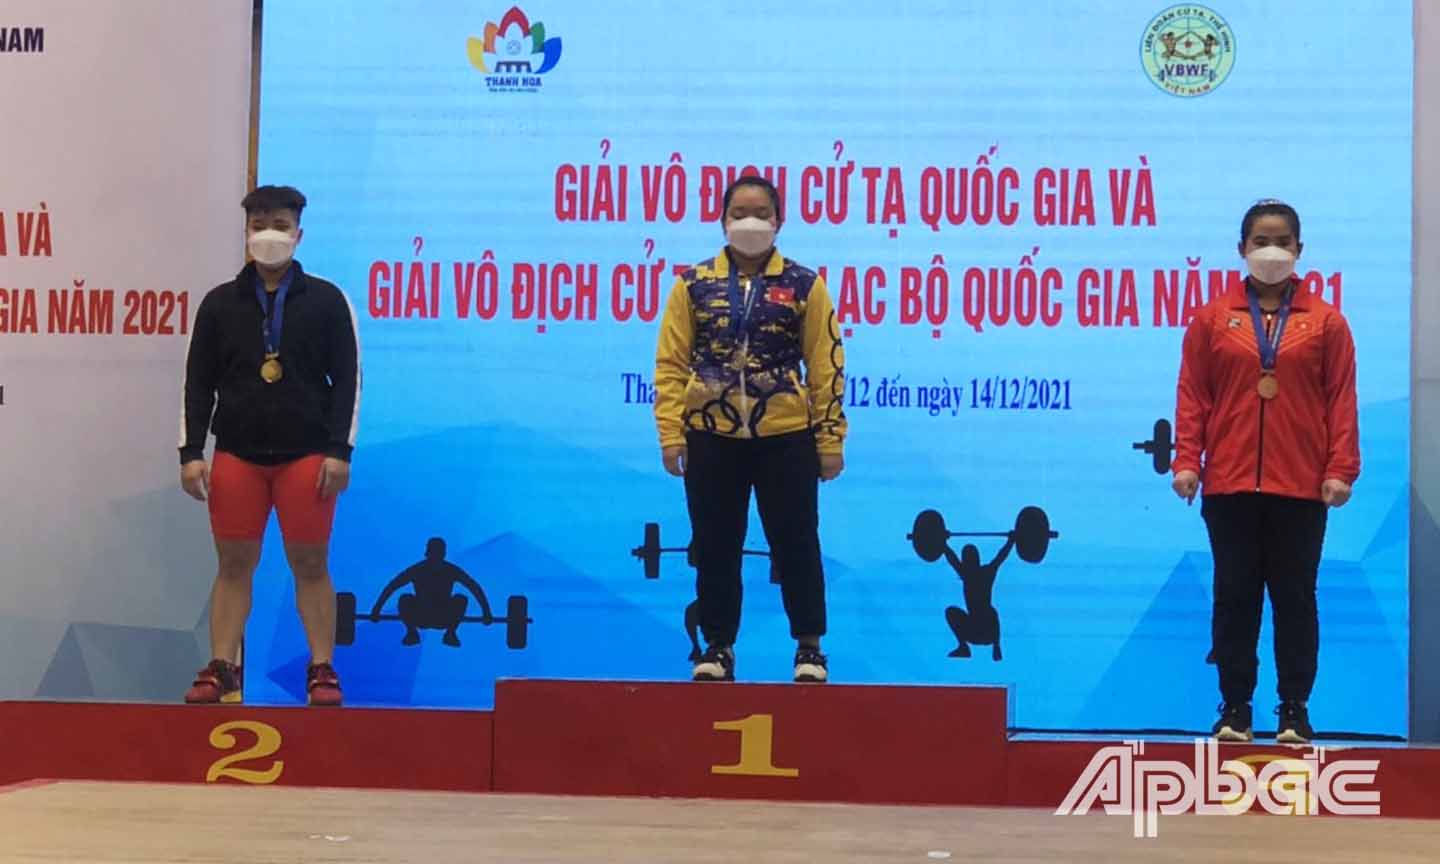 VĐV Lâm Thị Mỹ Lê (giữa) xuất sắc đoạt 2 HCV tại Giải Vô địch Cử tạ quốc gia và 2 HCV tại Giải Vô địch các CLB Cử tạ quốc gia.